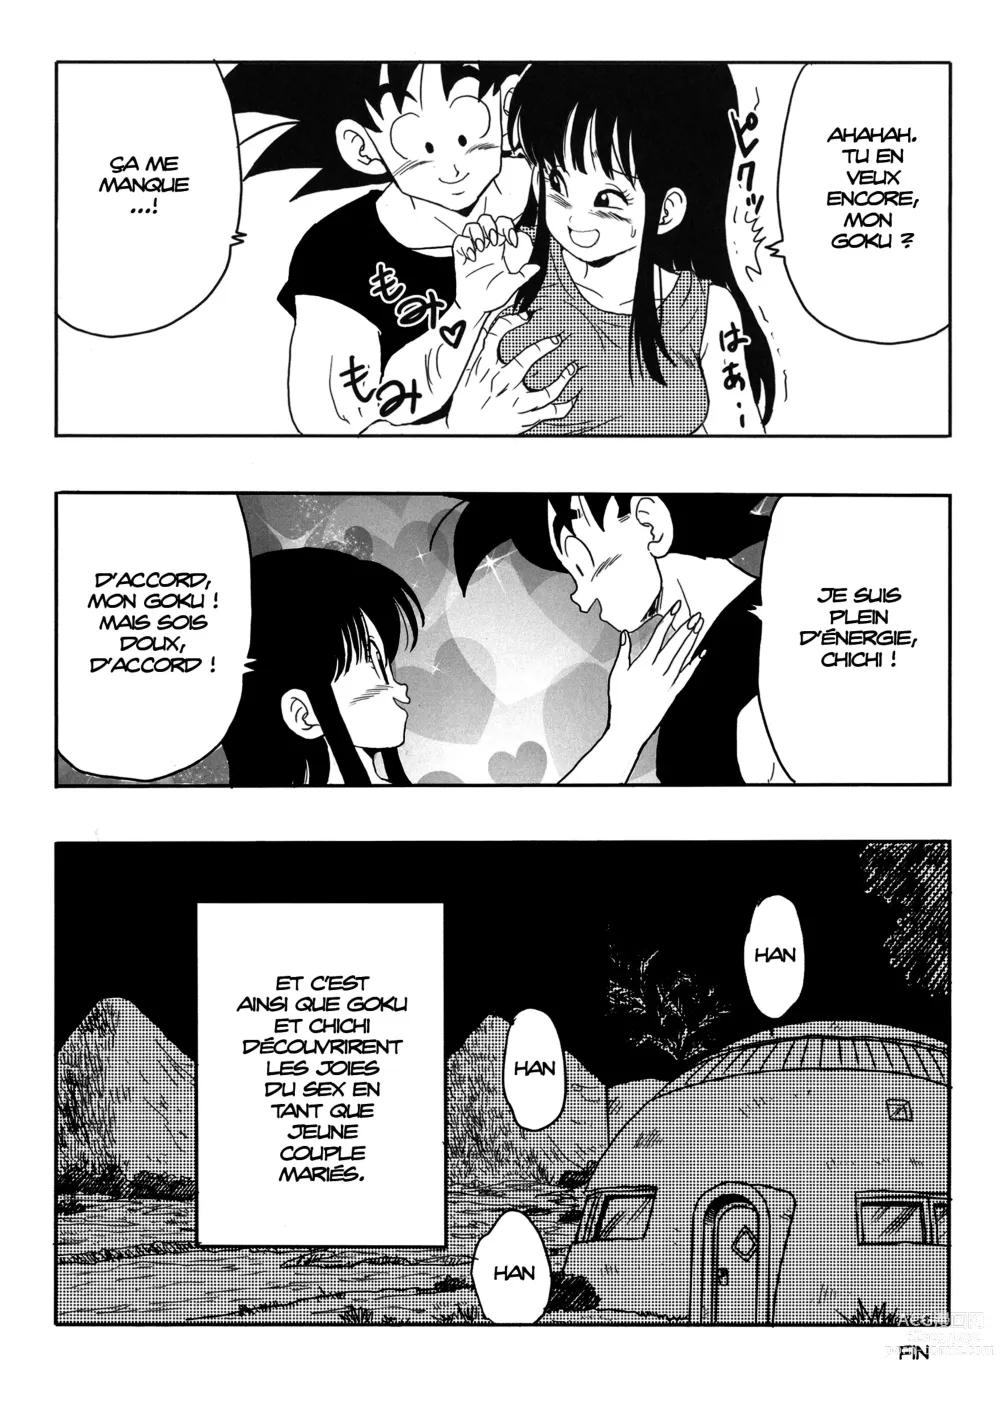 Page 39 of doujinshi Chichi et Goku